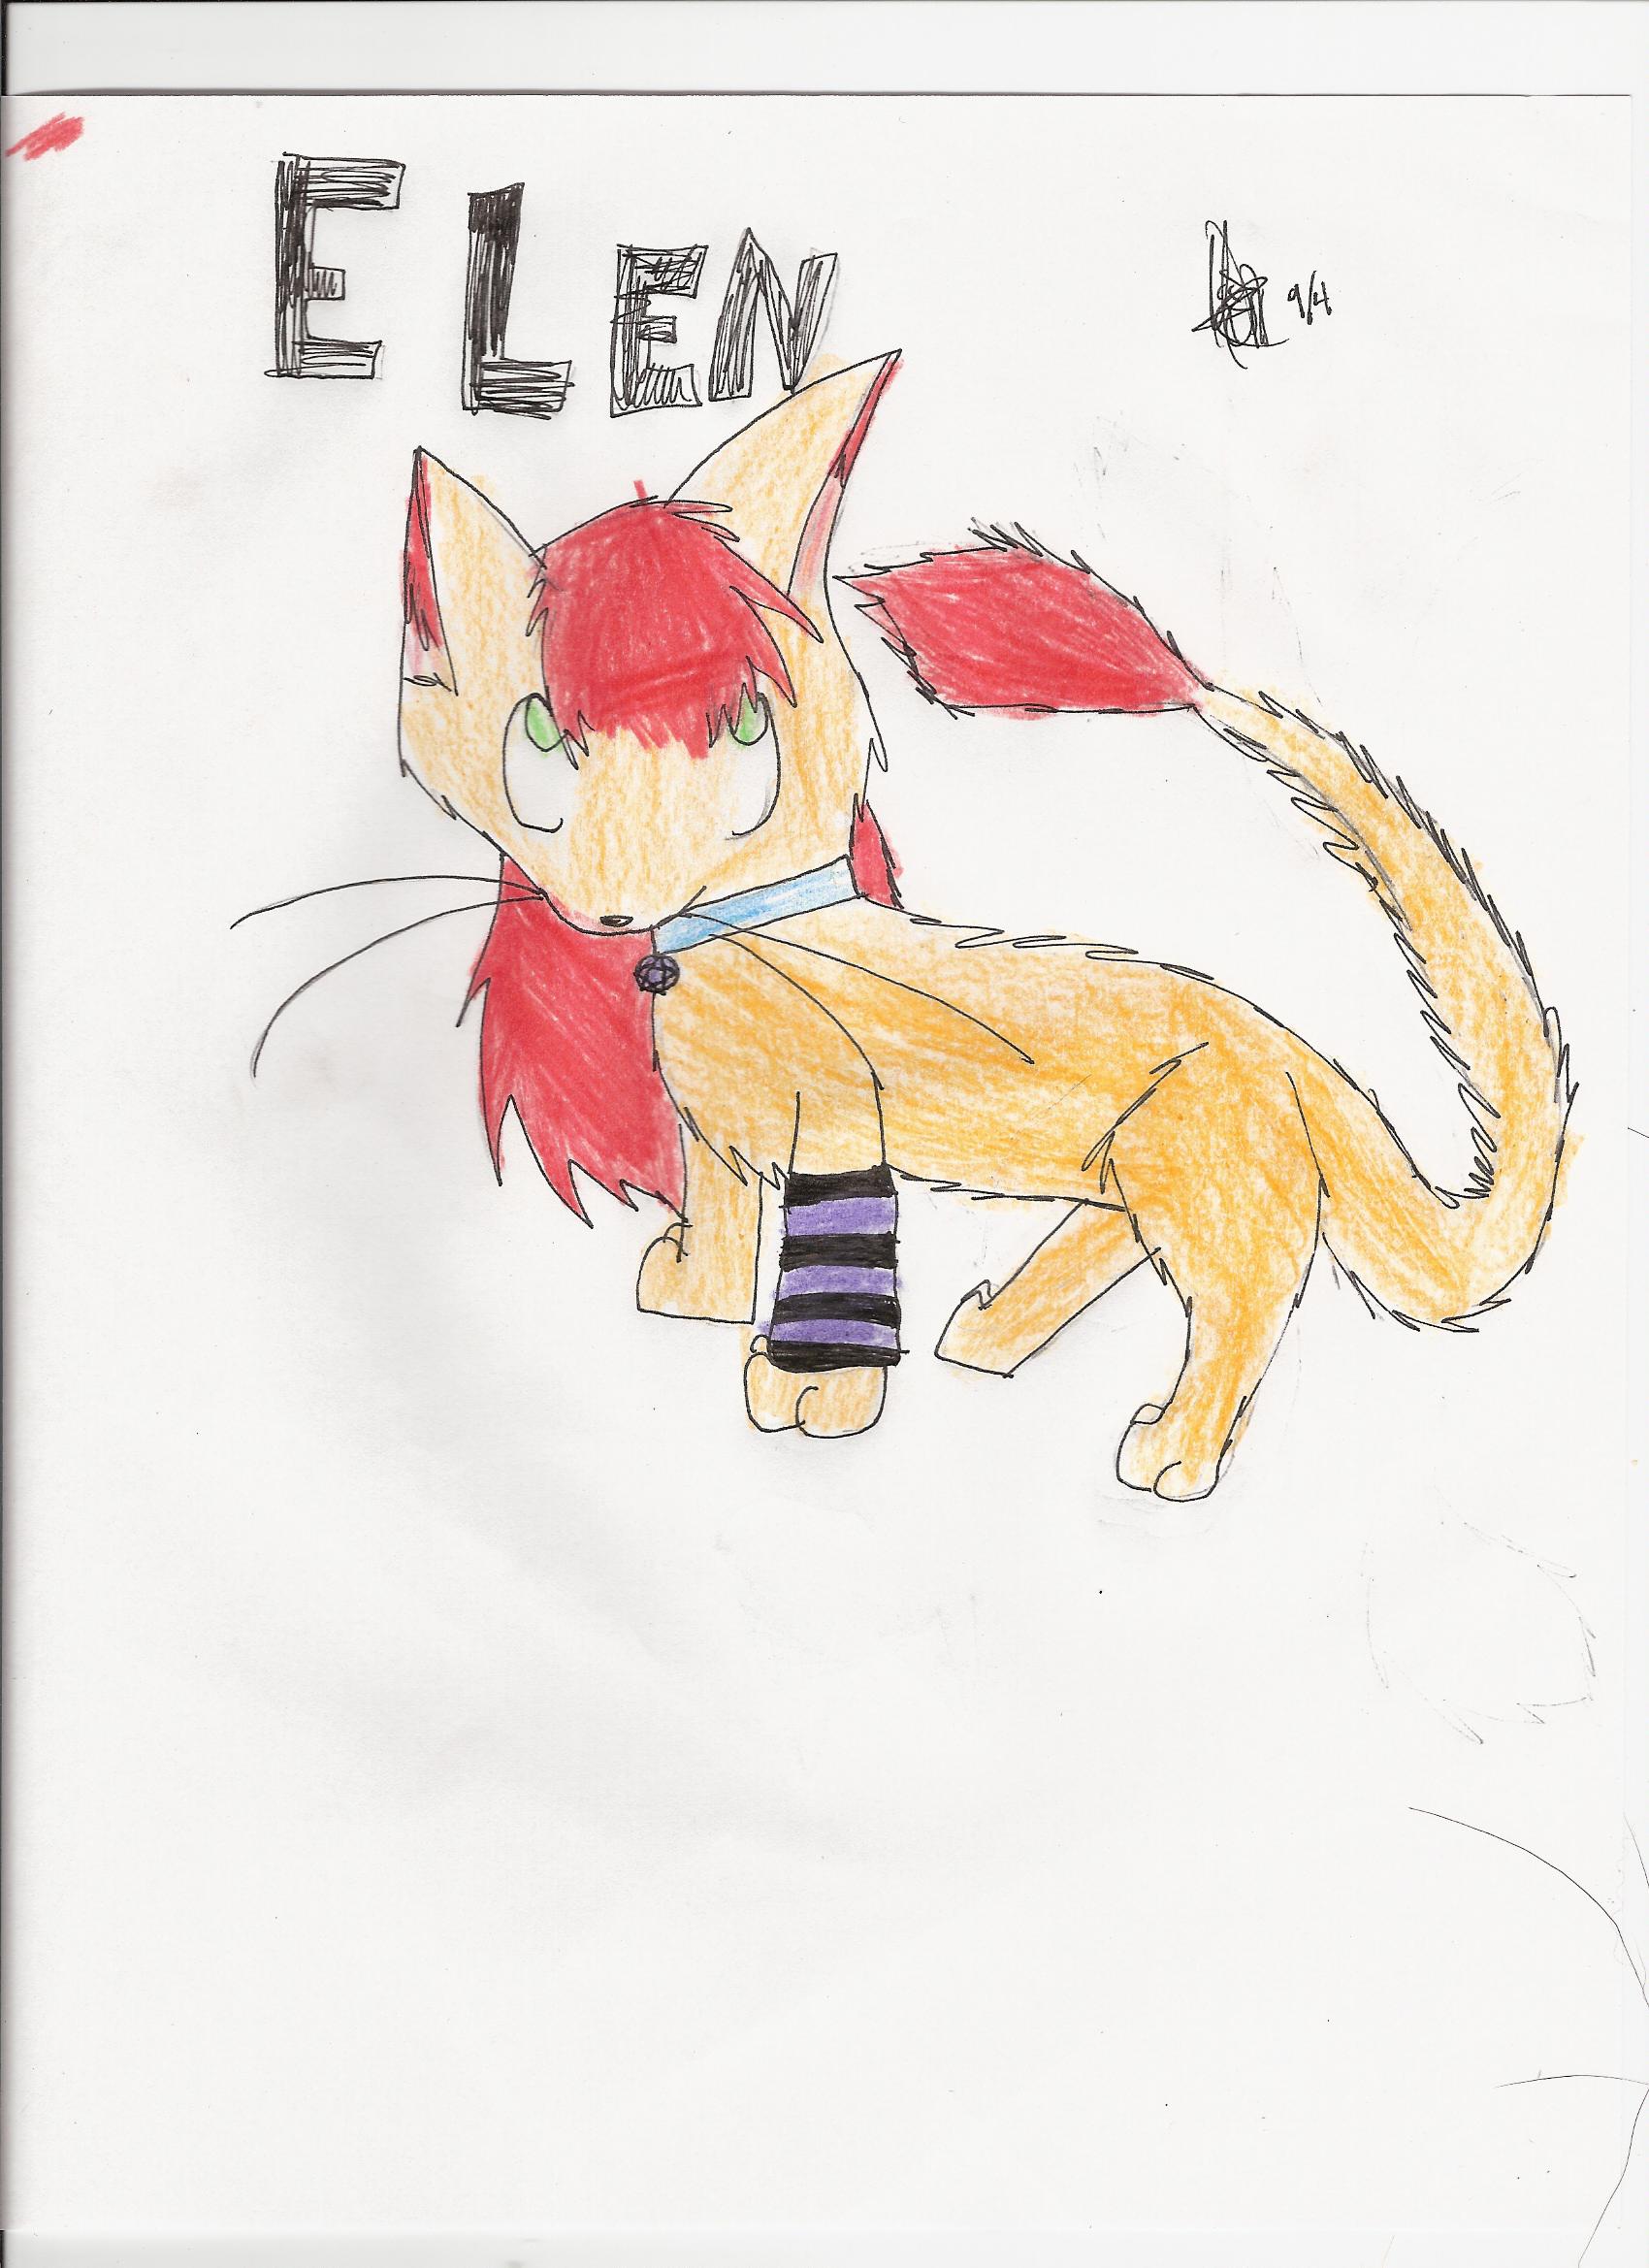 Elen the Cat by MidnightChaoz